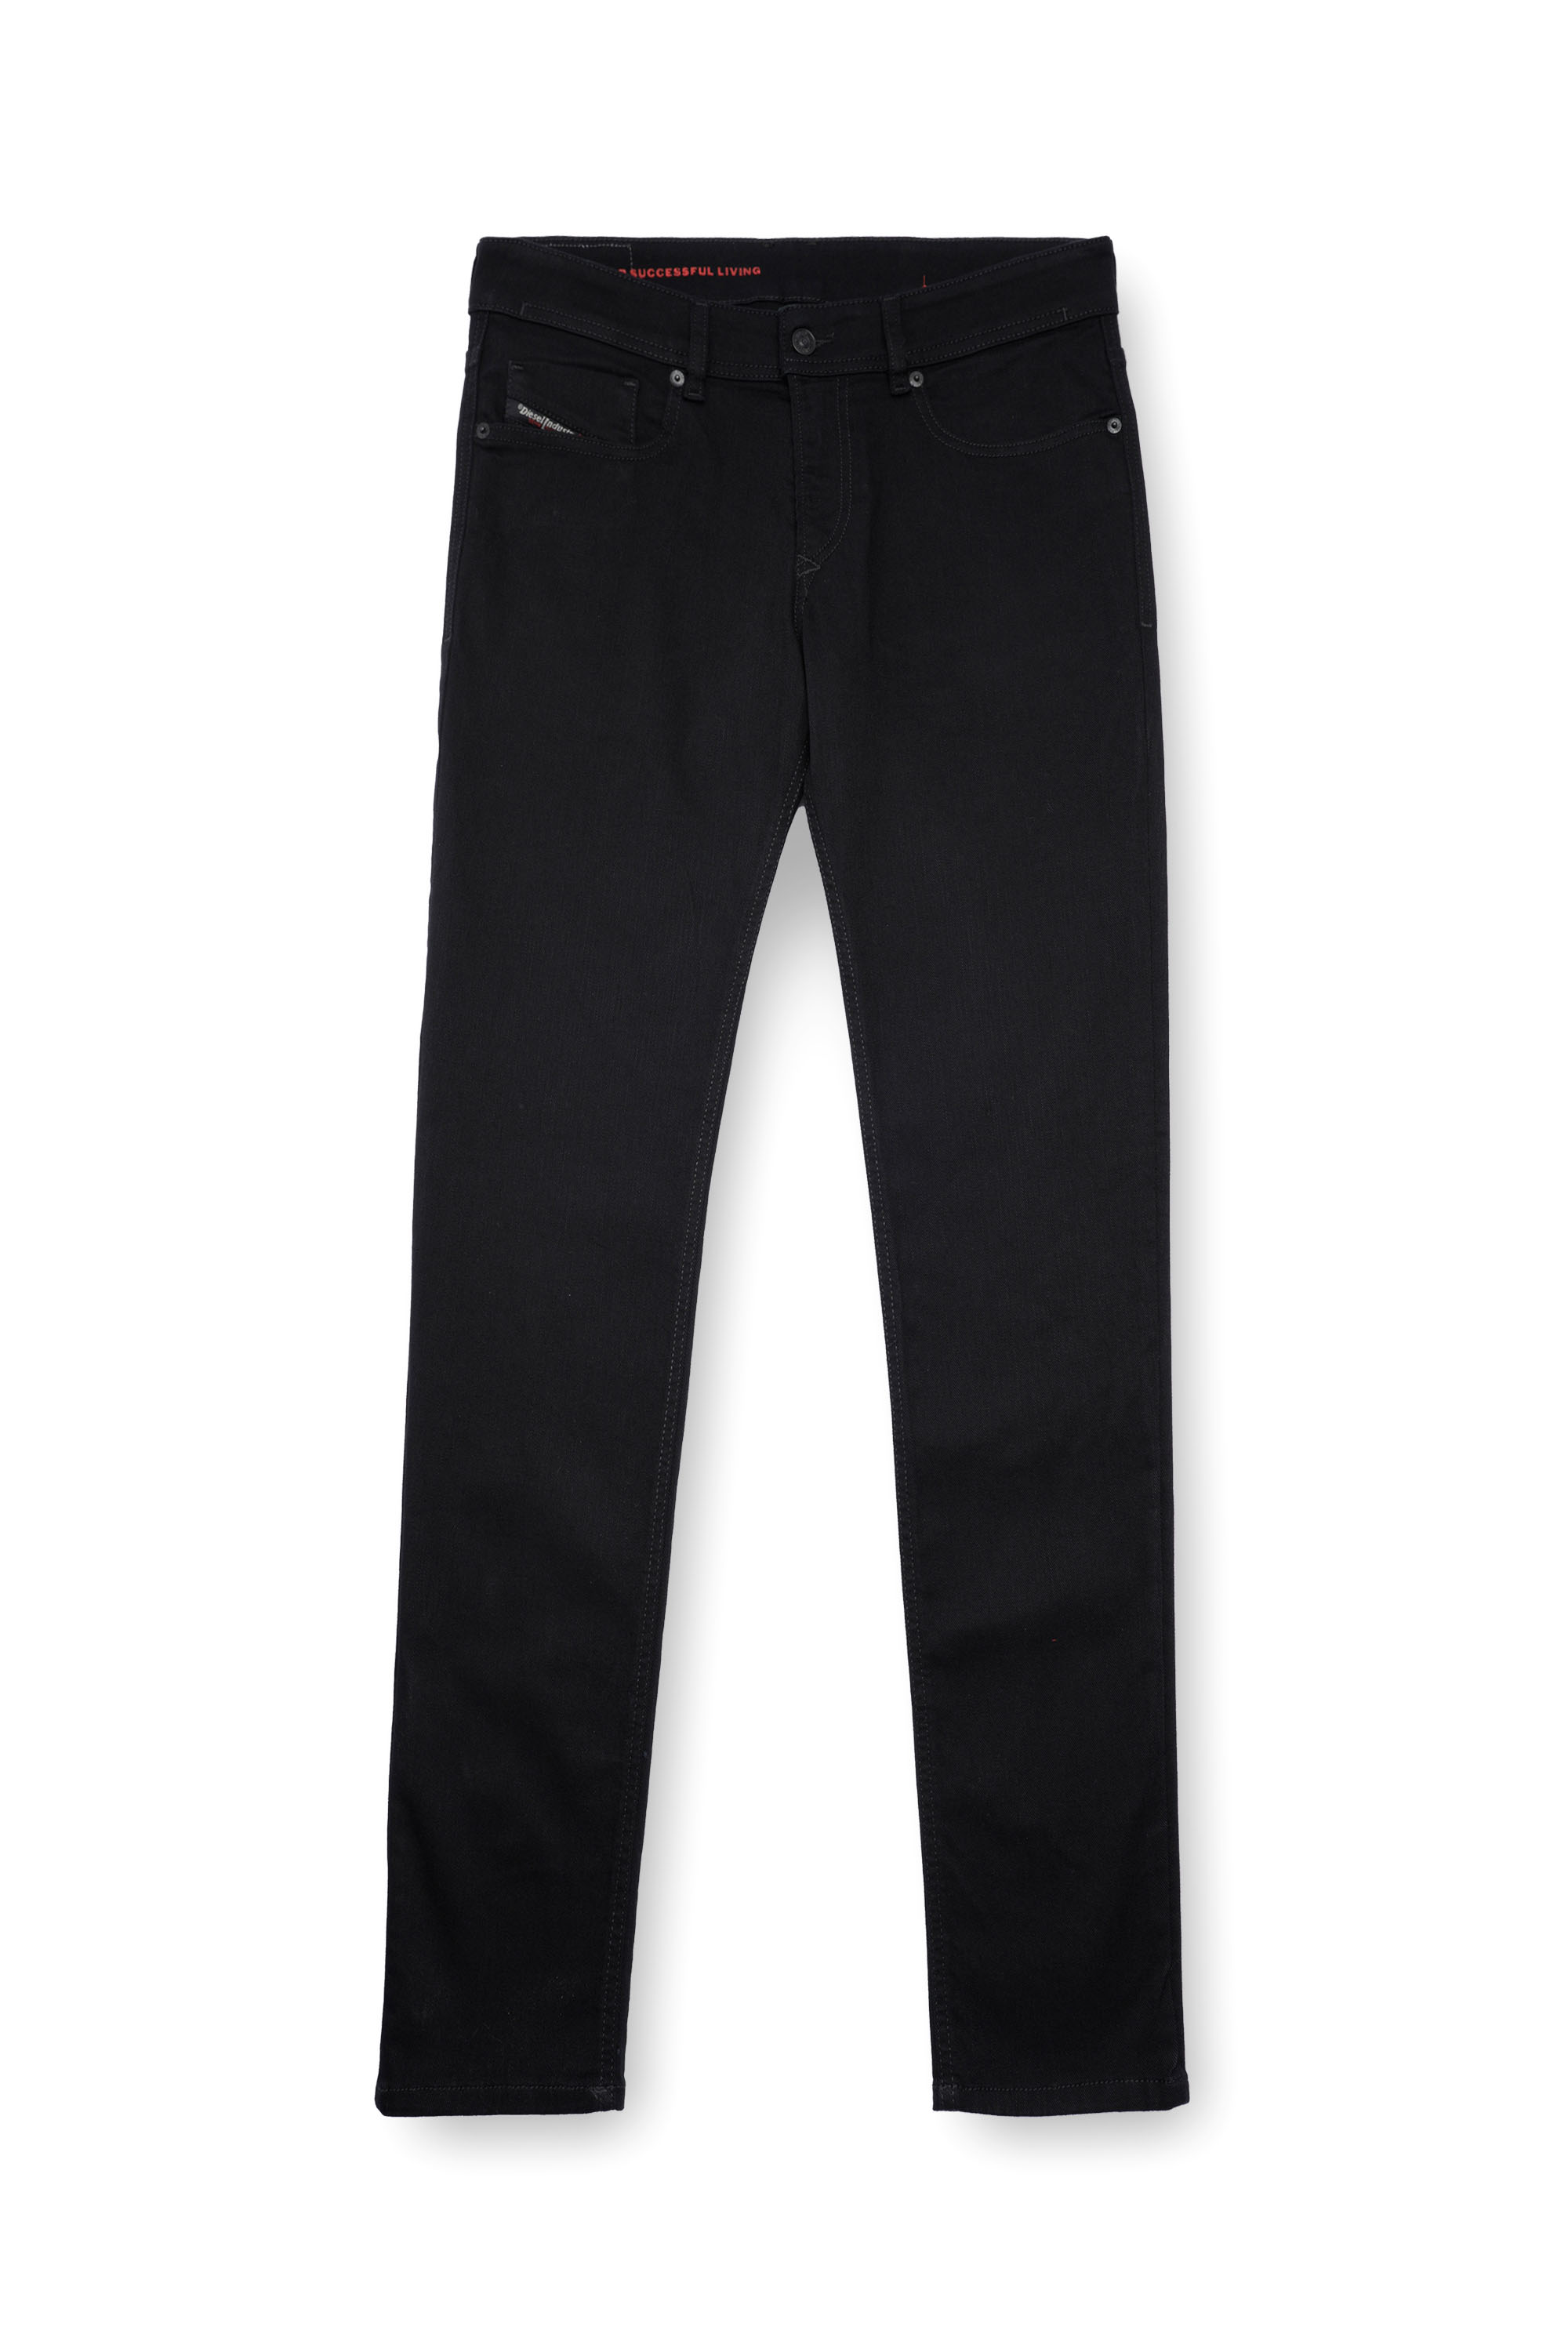 Diesel - Man Skinny Jeans 1979 Sleenker 09C51, Black/Dark grey - Image 3